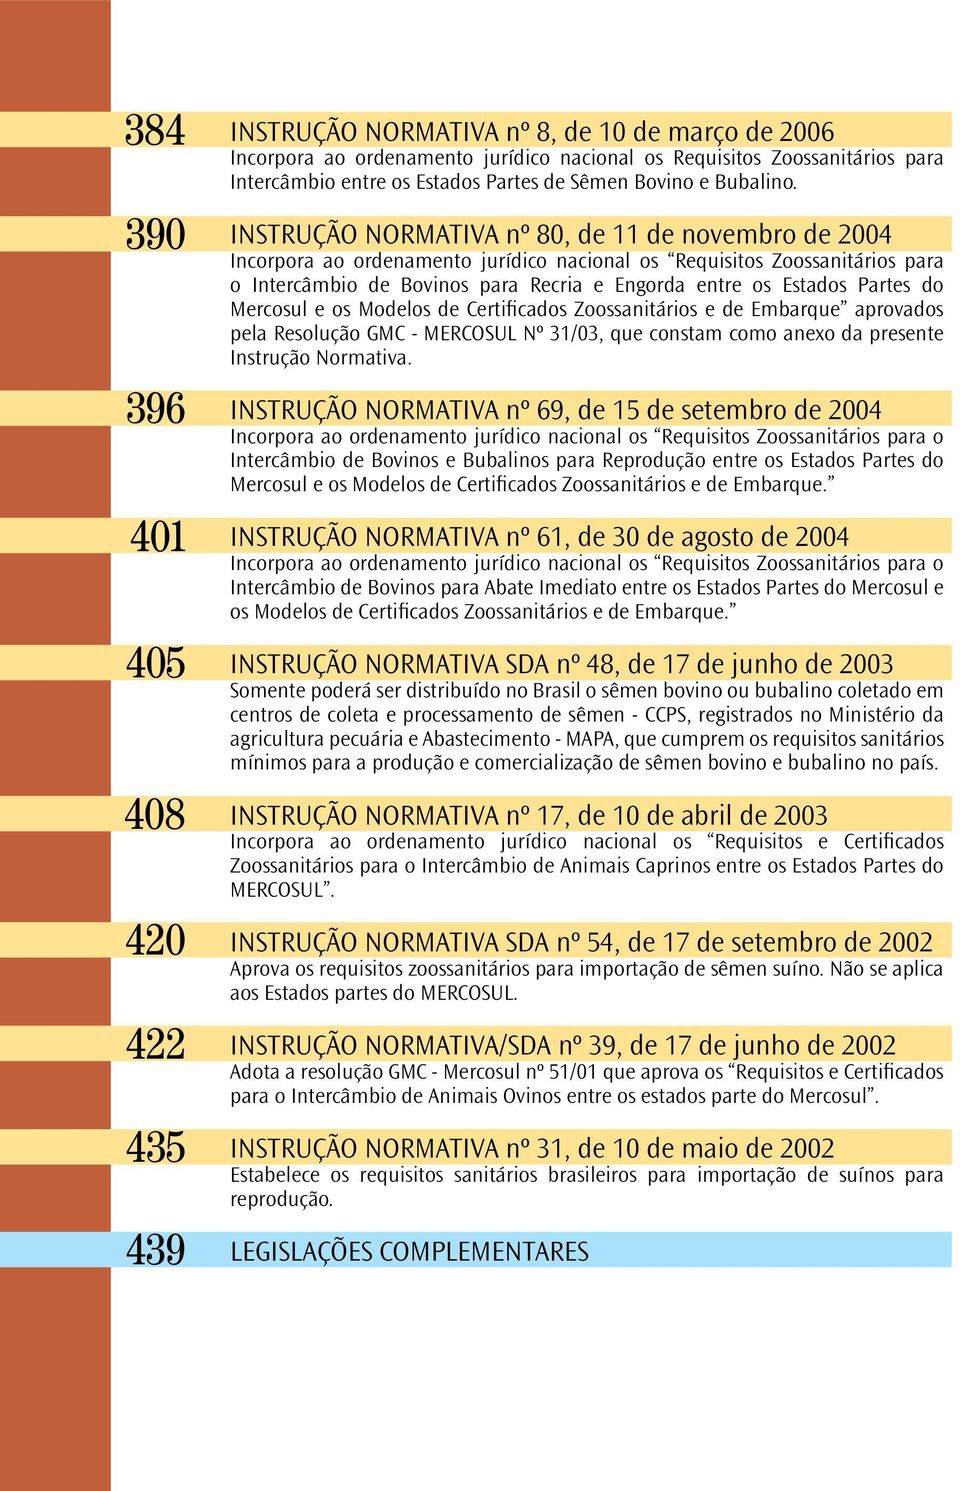 INSTRUÇÃO NORMATIVA nº 80, de 11 de novembro de 2004 Incorpora ao ordenamento jurídico nacional os Requisitos Zoossanitários para o Intercâmbio de Bovinos para Recria e Engorda entre os Estados